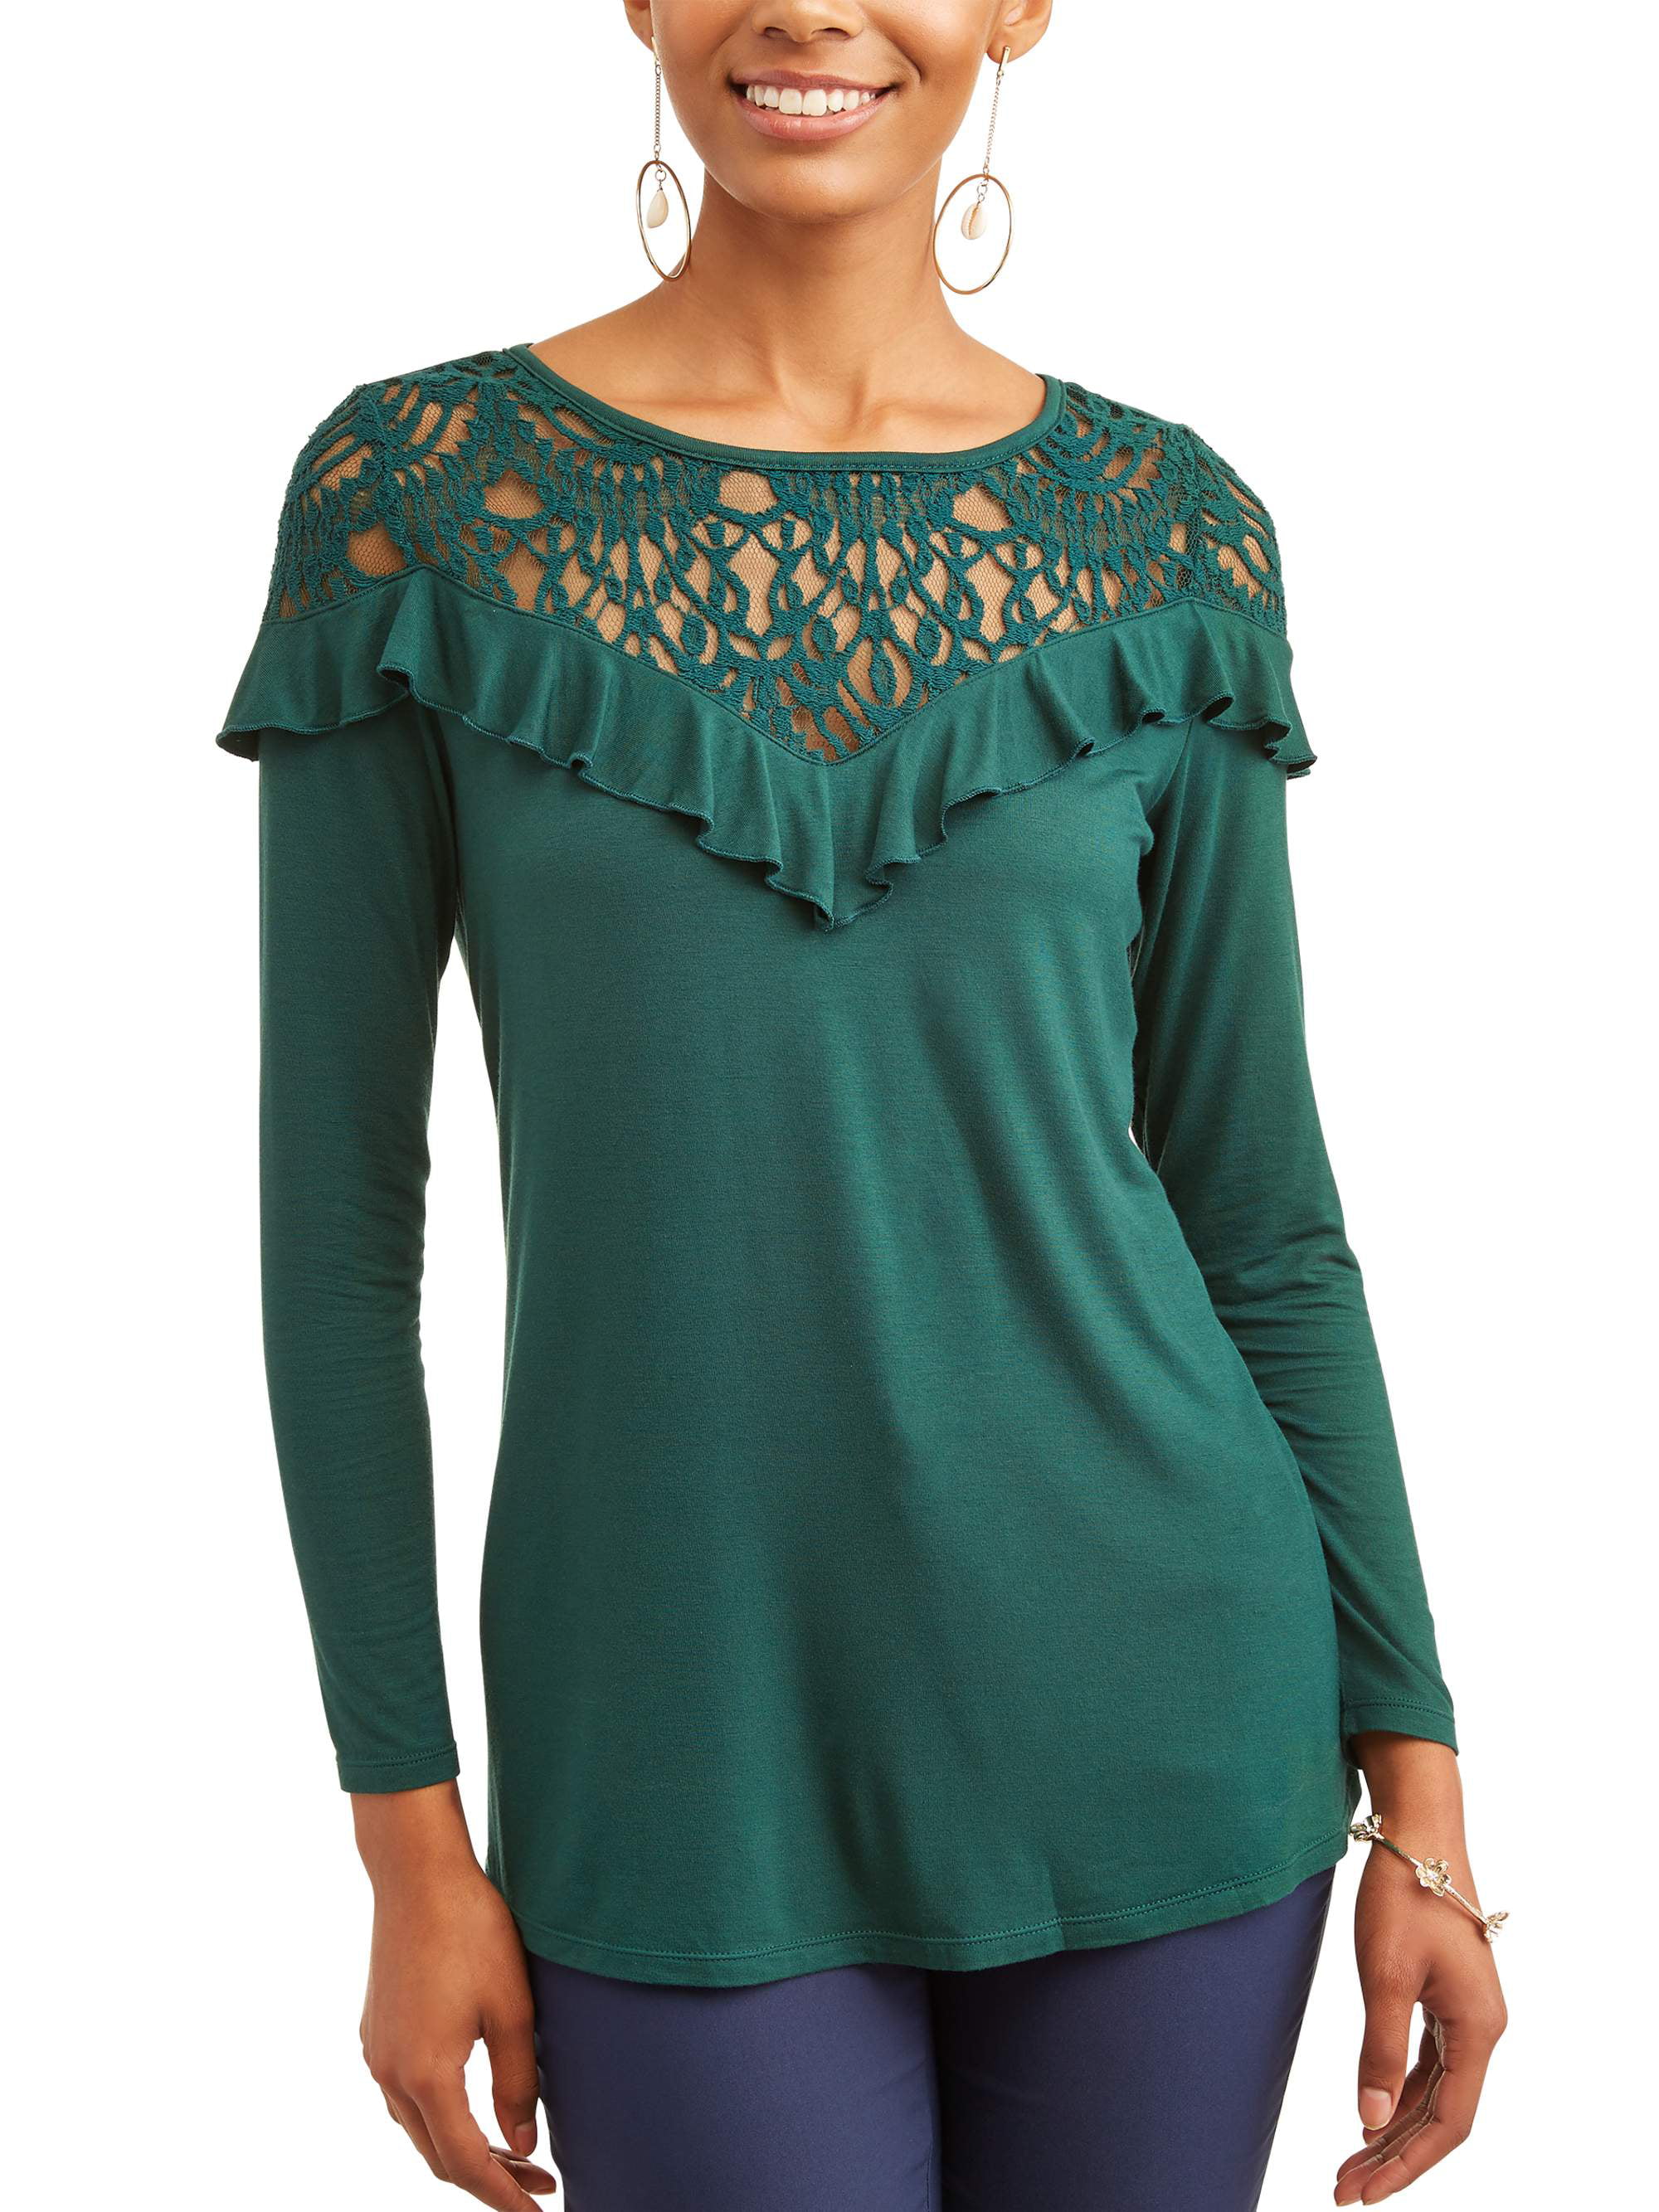 Women's Long Sleeve Ruffle Lace Top - Walmart.com